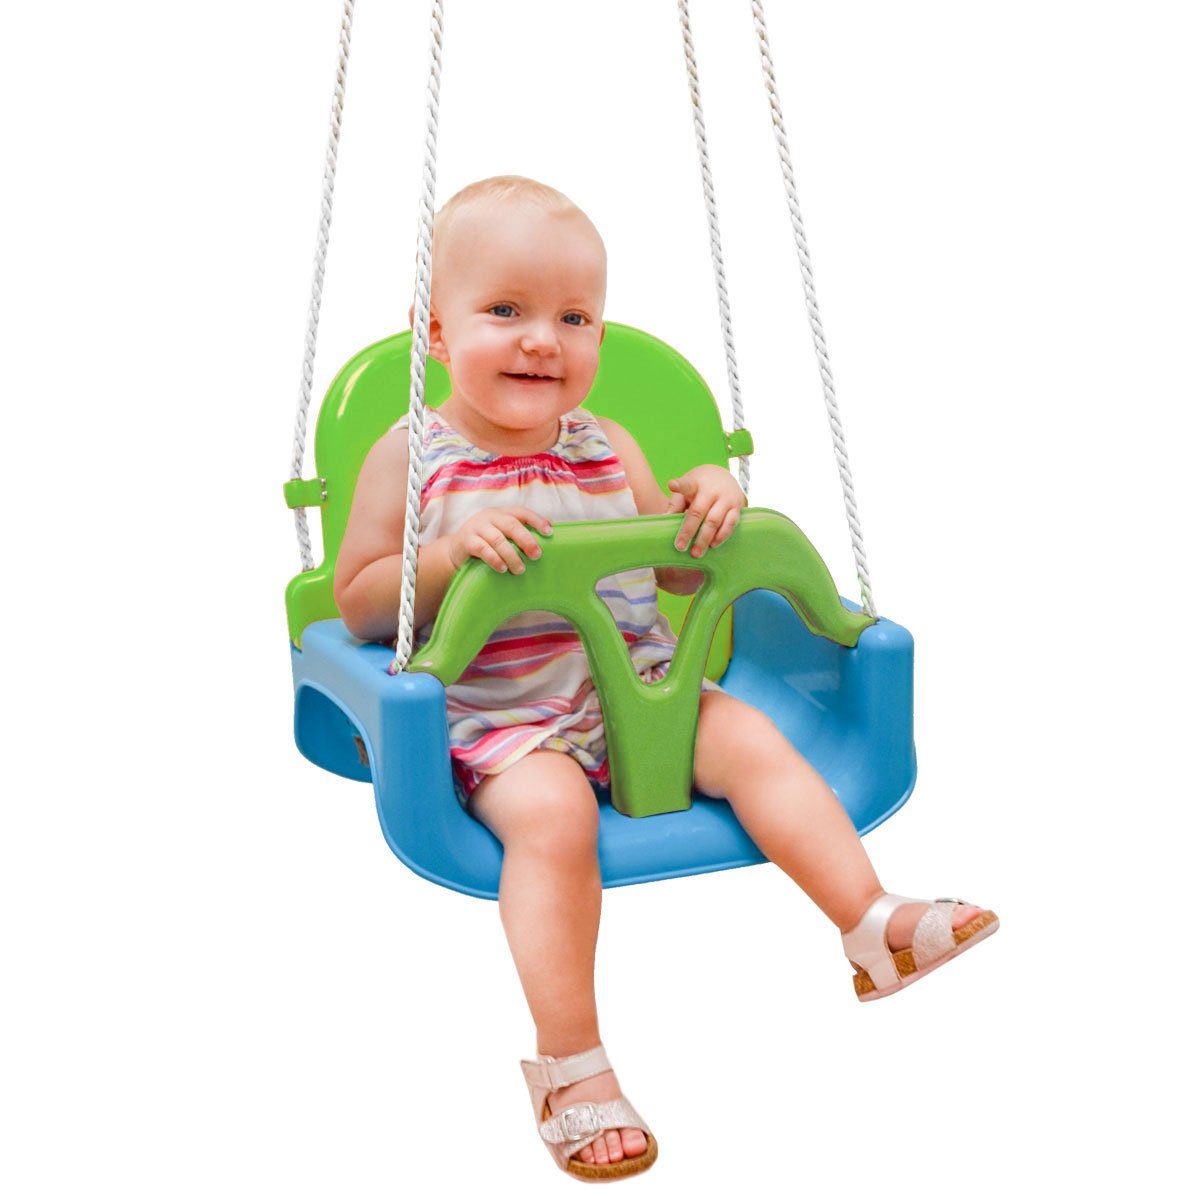 Babyschaukel Kleinkindschaukel 3 in 1  Kinderschaukel Spielplatz verstellbar 